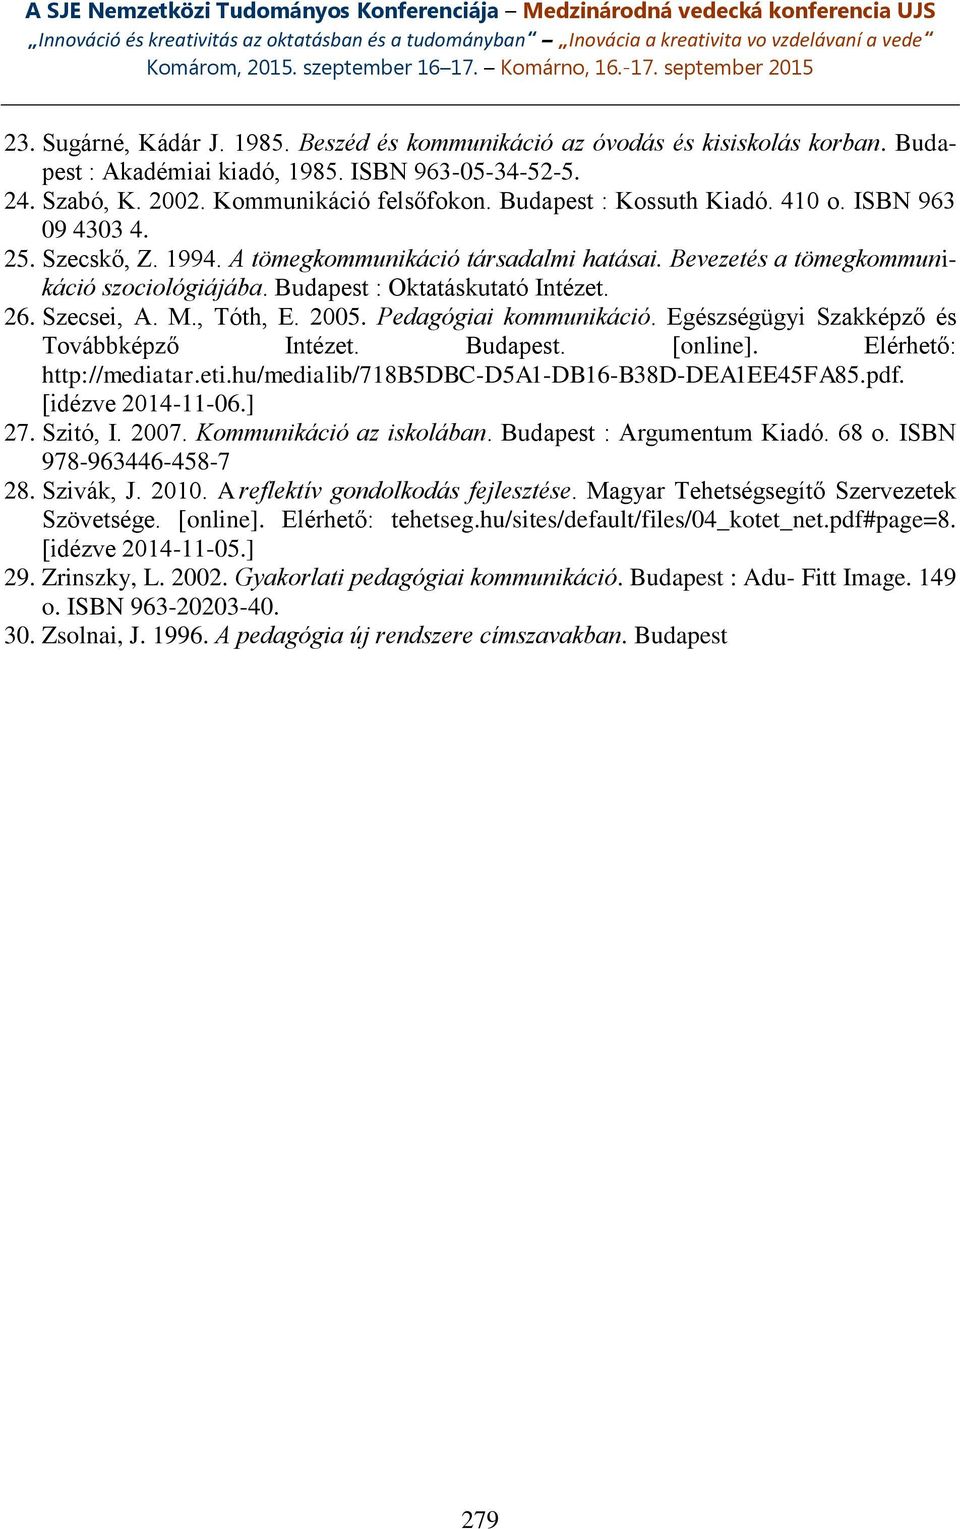 Szecsei, A. M., Tóth, E. 2005. Pedagógiai kommunikáció. Egészségügyi Szakképző és Továbbképző Intézet. Budapest. [online]. Elérhető: http://mediatar.eti.